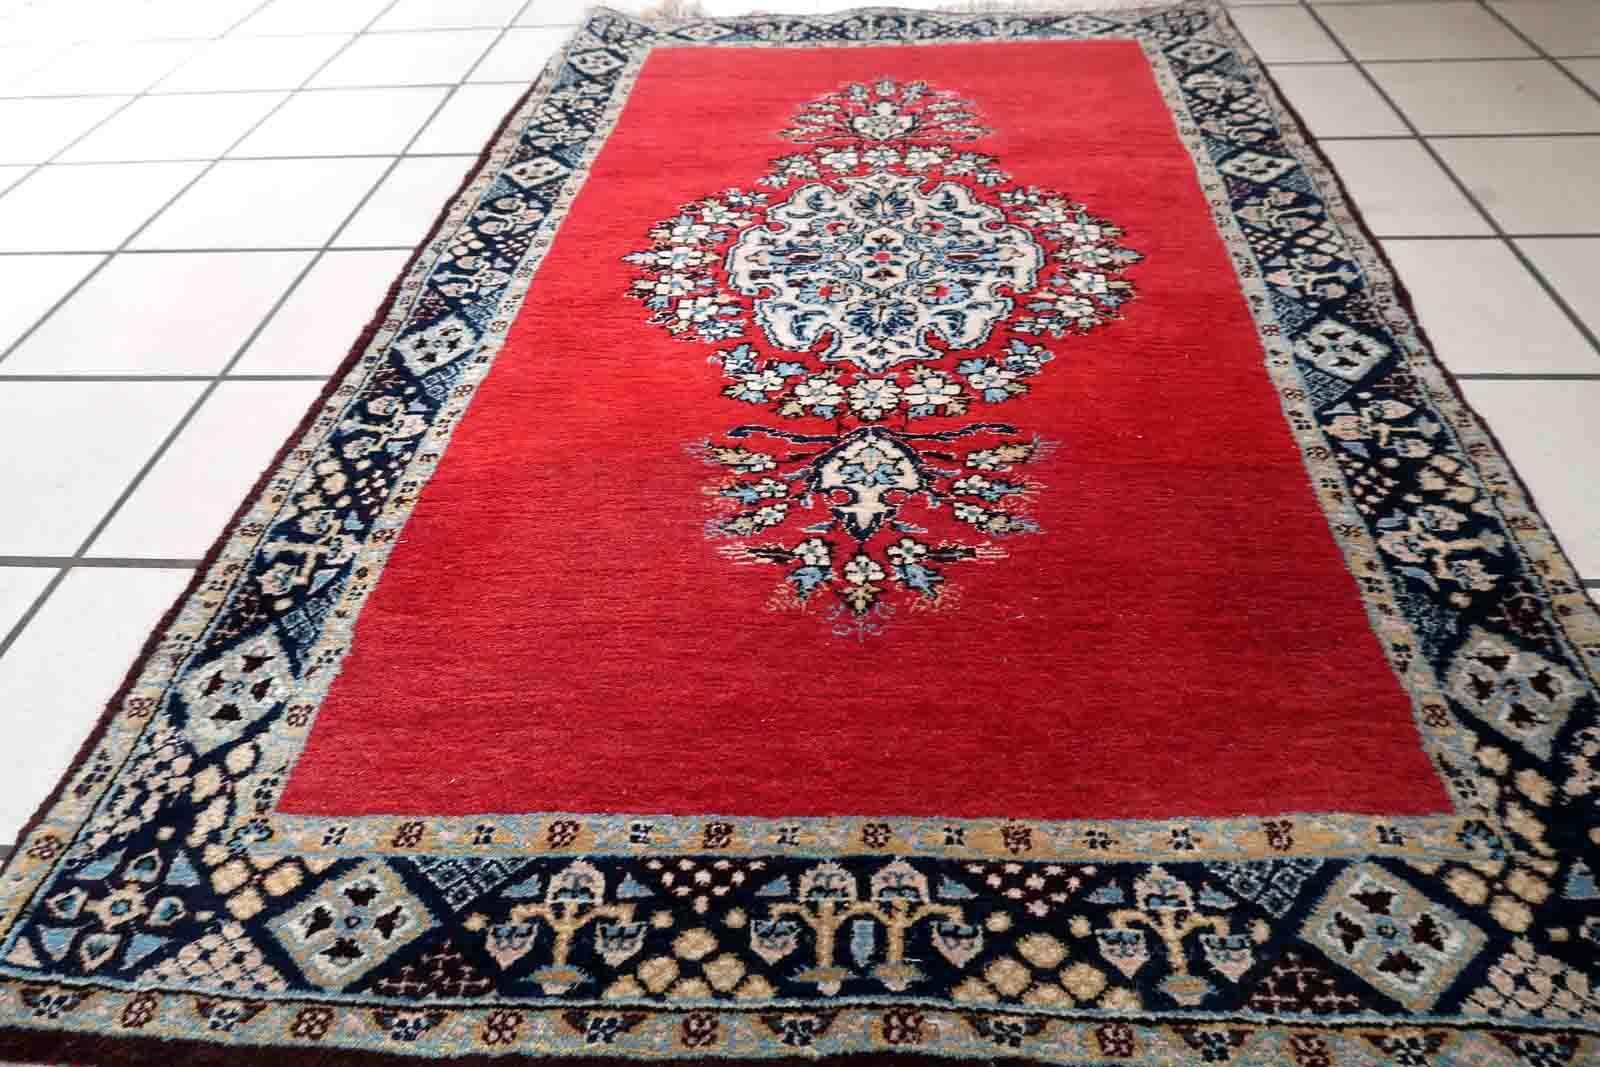 Handgefertigter Vintage-Teppich aus Täbris in leuchtendem Rot mit großem Medaillon. Der Teppich stammt aus der Mitte des 20. Jahrhunderts und ist in gutem Originalzustand.

-Zustand: original gut,

-CIRCA: 1950er Jahre,

-Größe: 2,6' x 4,1' (80cm x